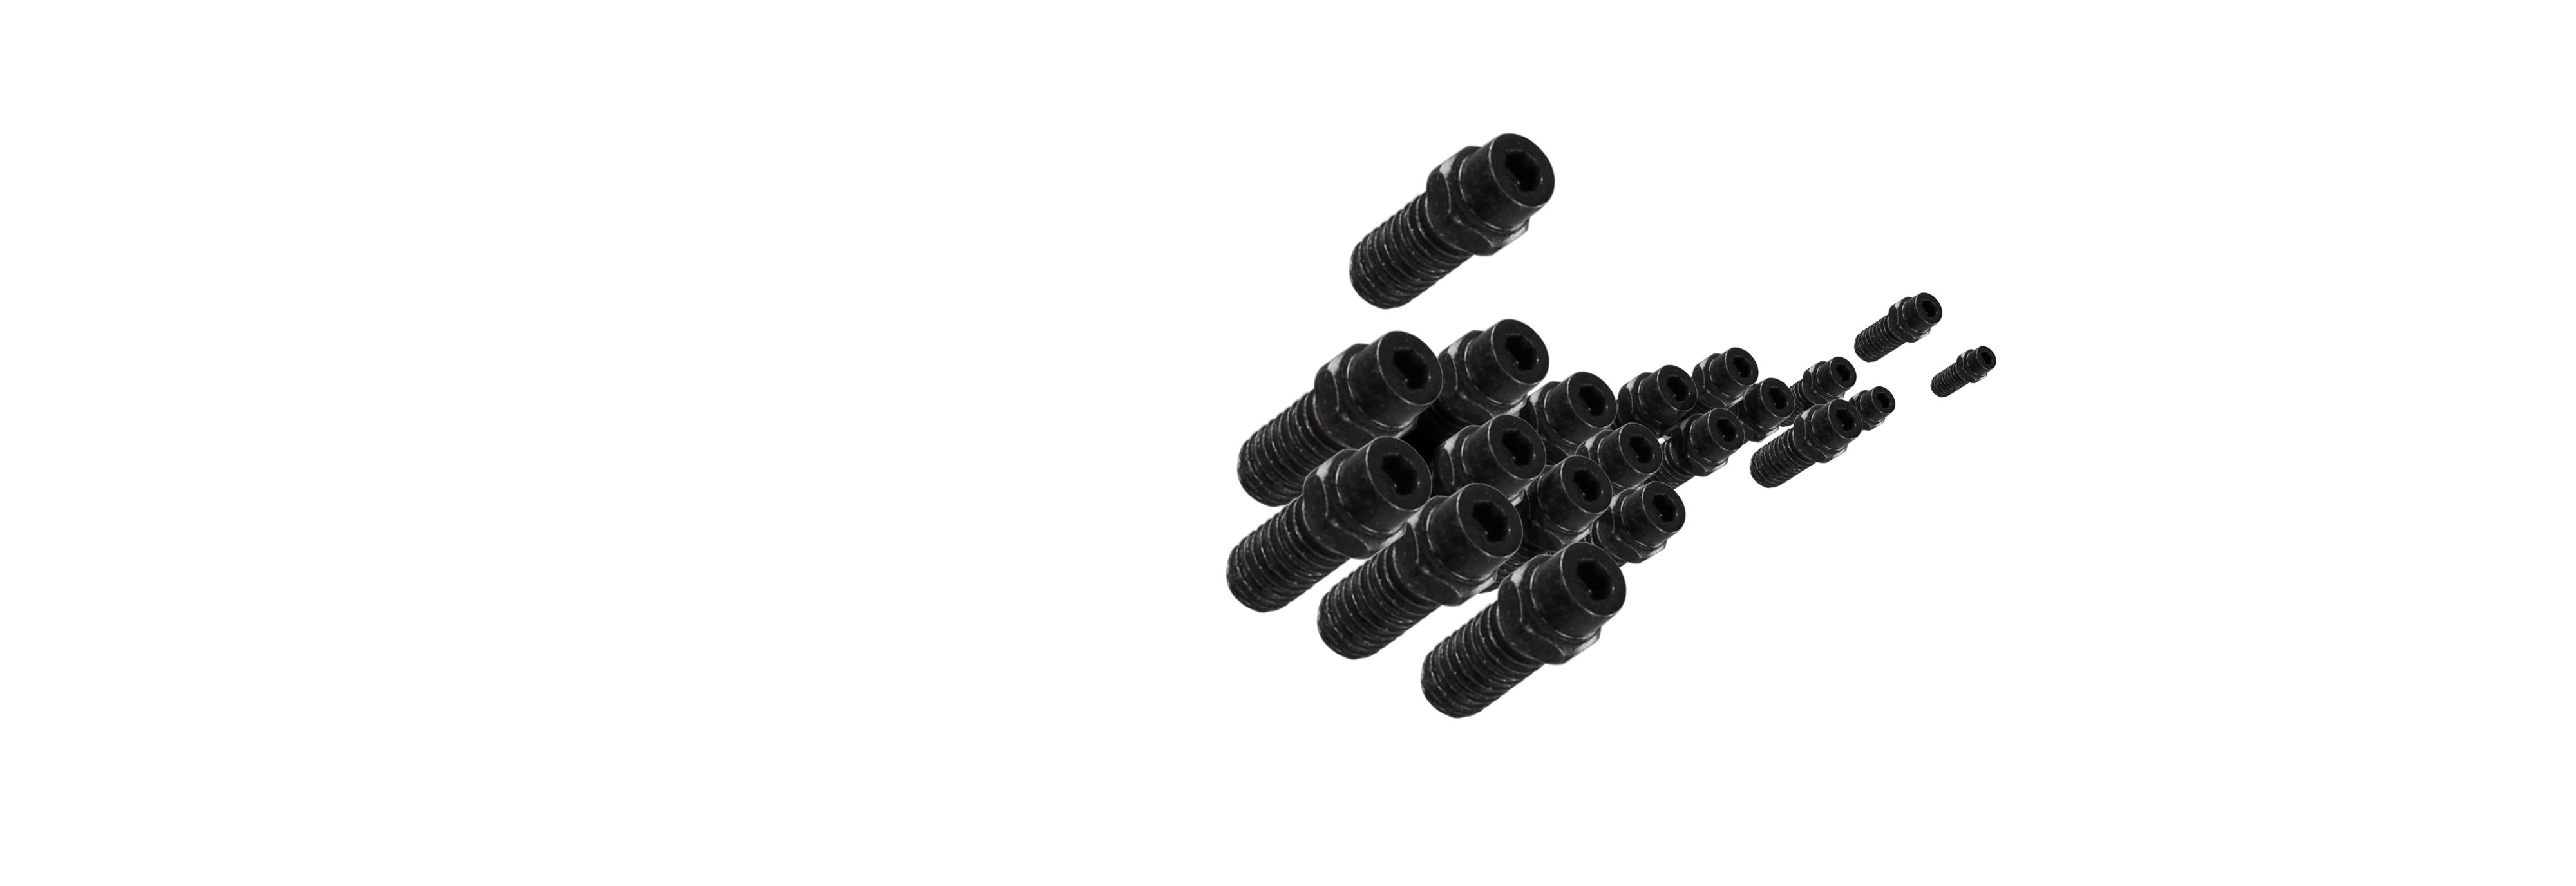 DMR - Pedals - Spares -Flip Pin Set for Vault Pedal - Black